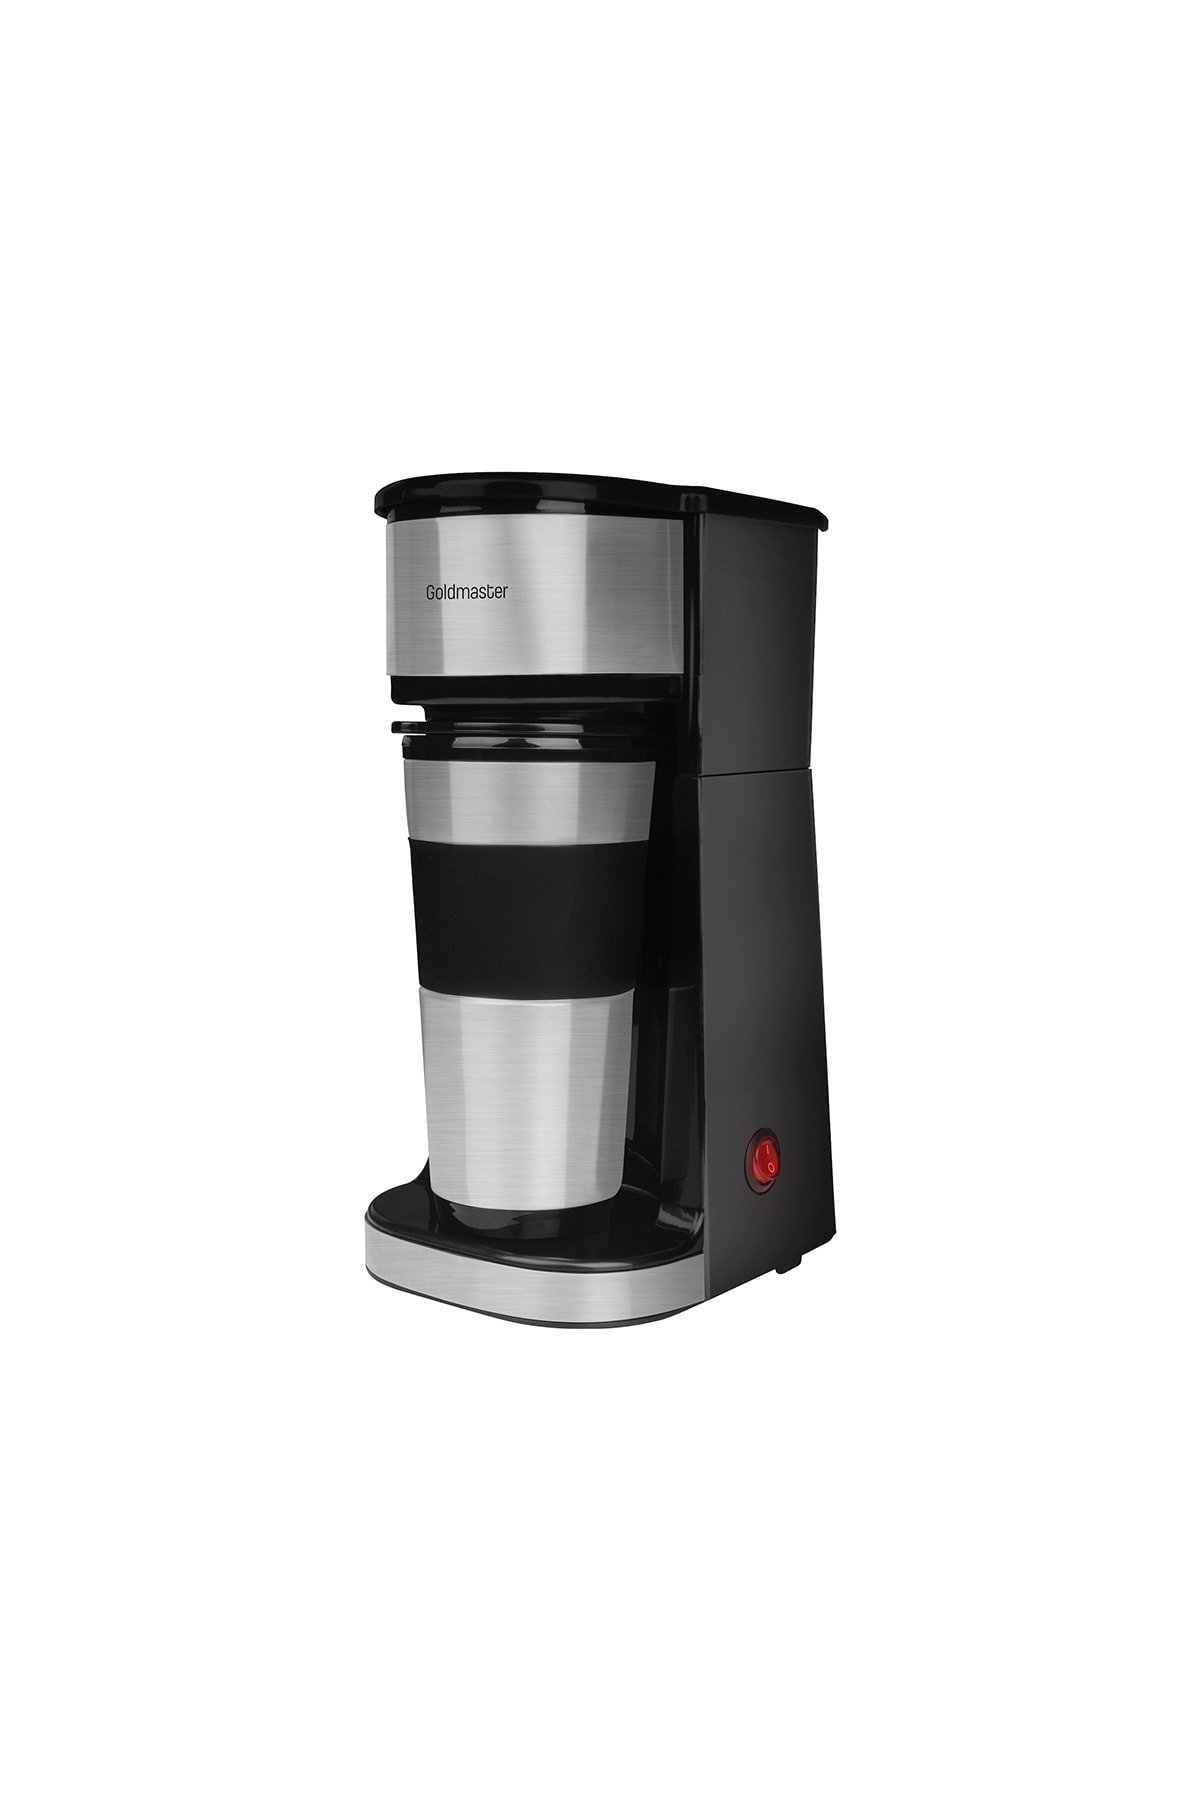 GoldMaster Karnaval Filtre Kahve Makinesi OE7213